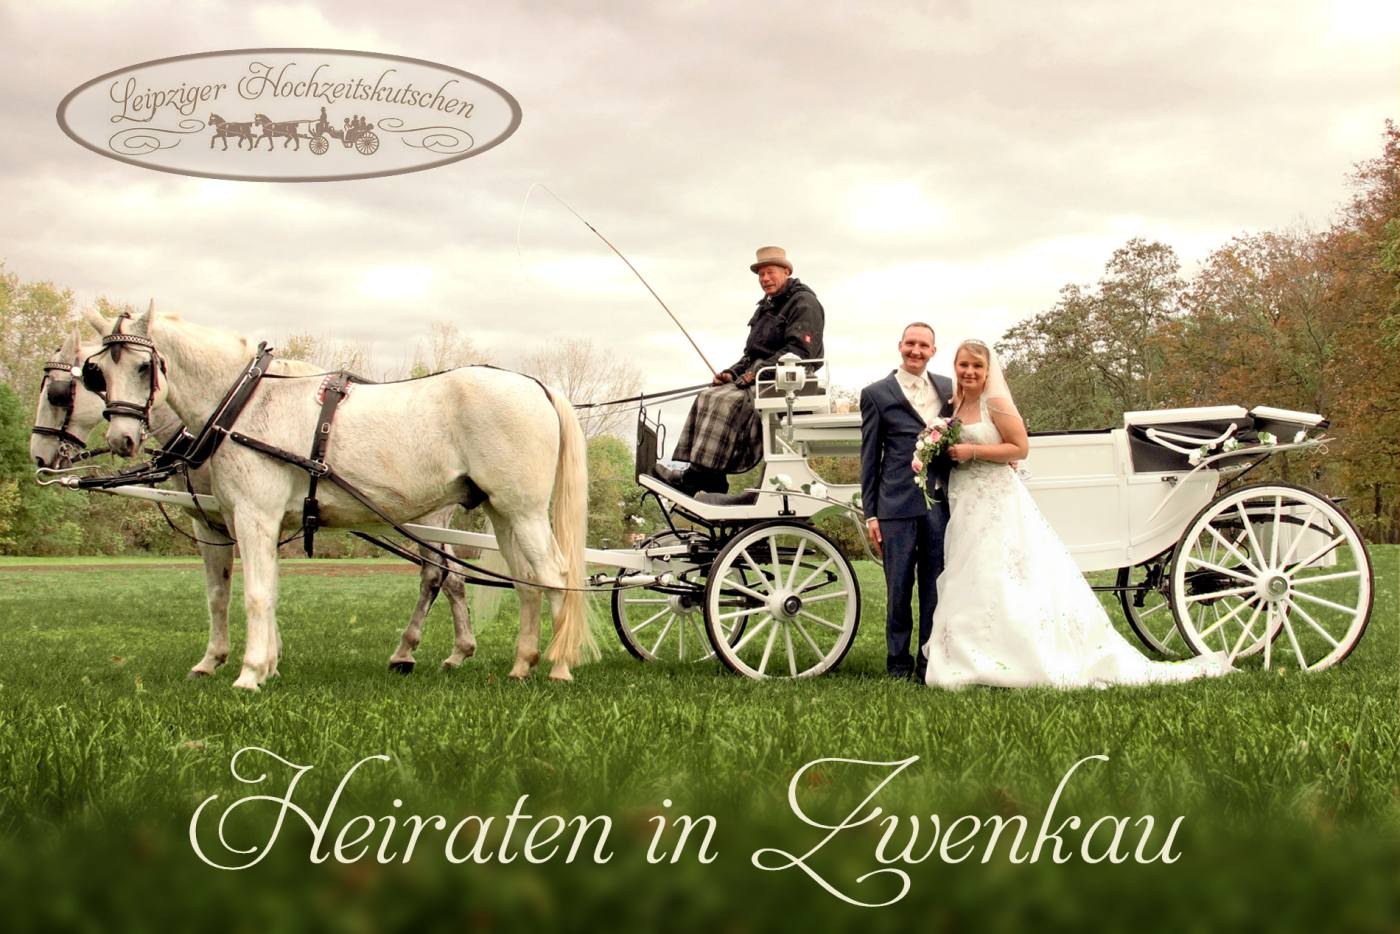 Bild: Traditionell Heiraten in Zwenkau mit weißer Pferdekutsche